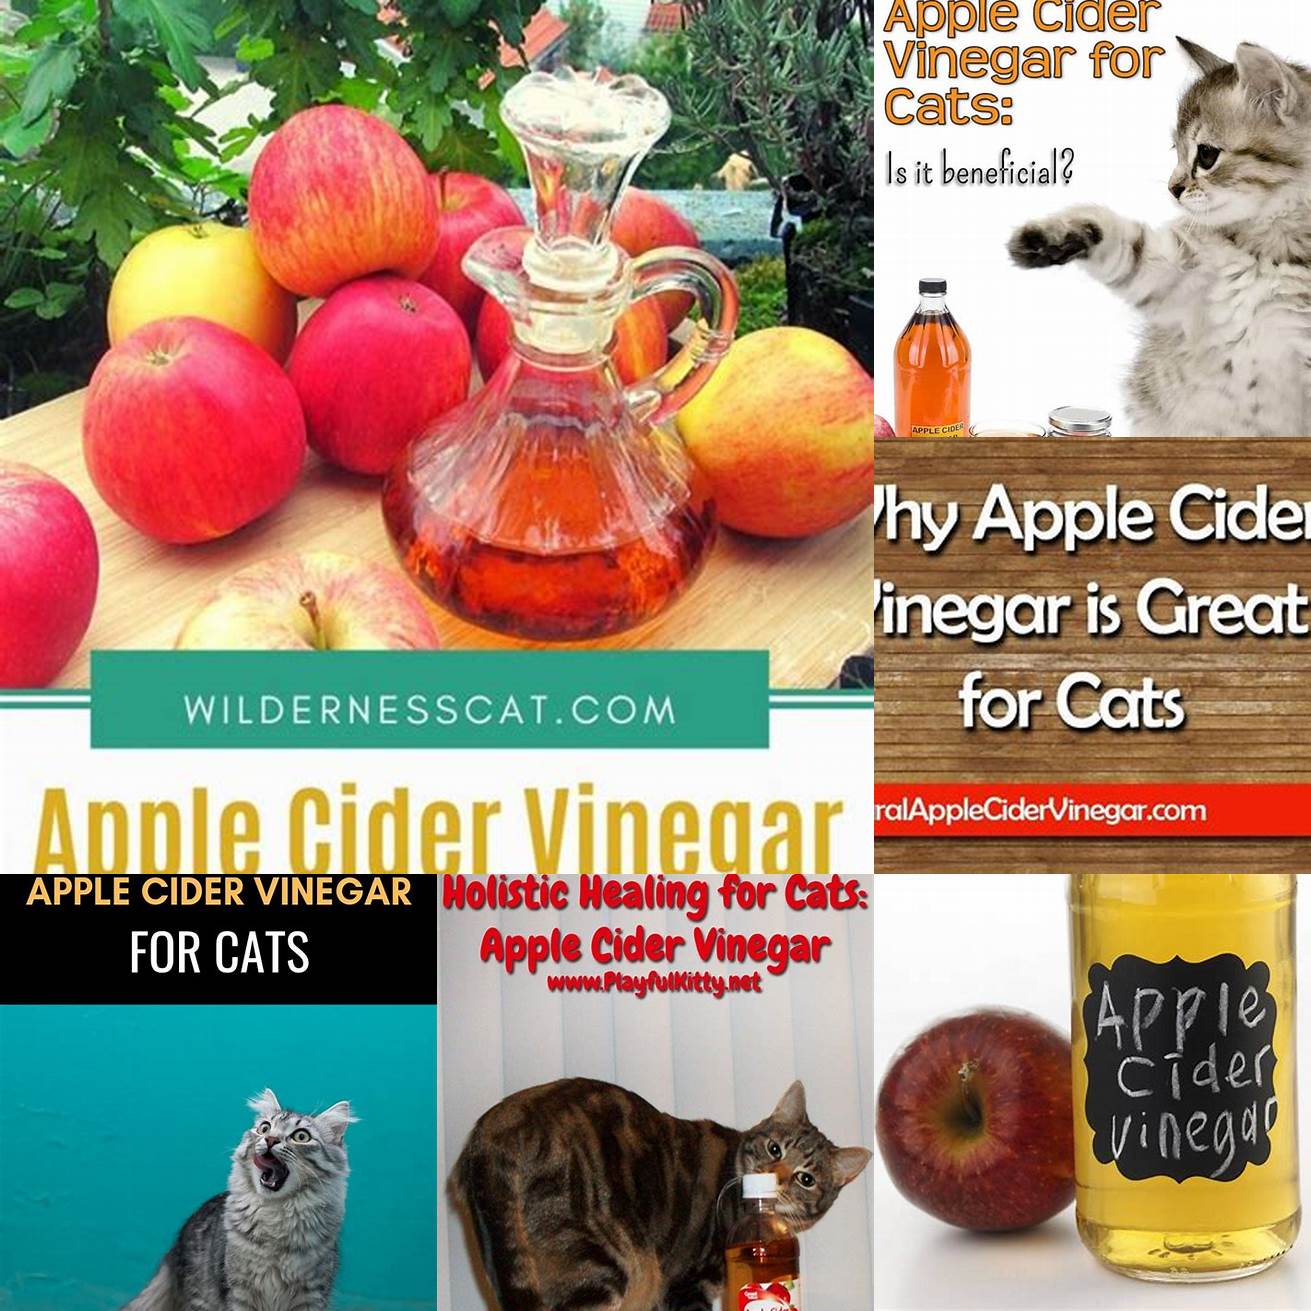 Mix apple cider vinegar with distilled water